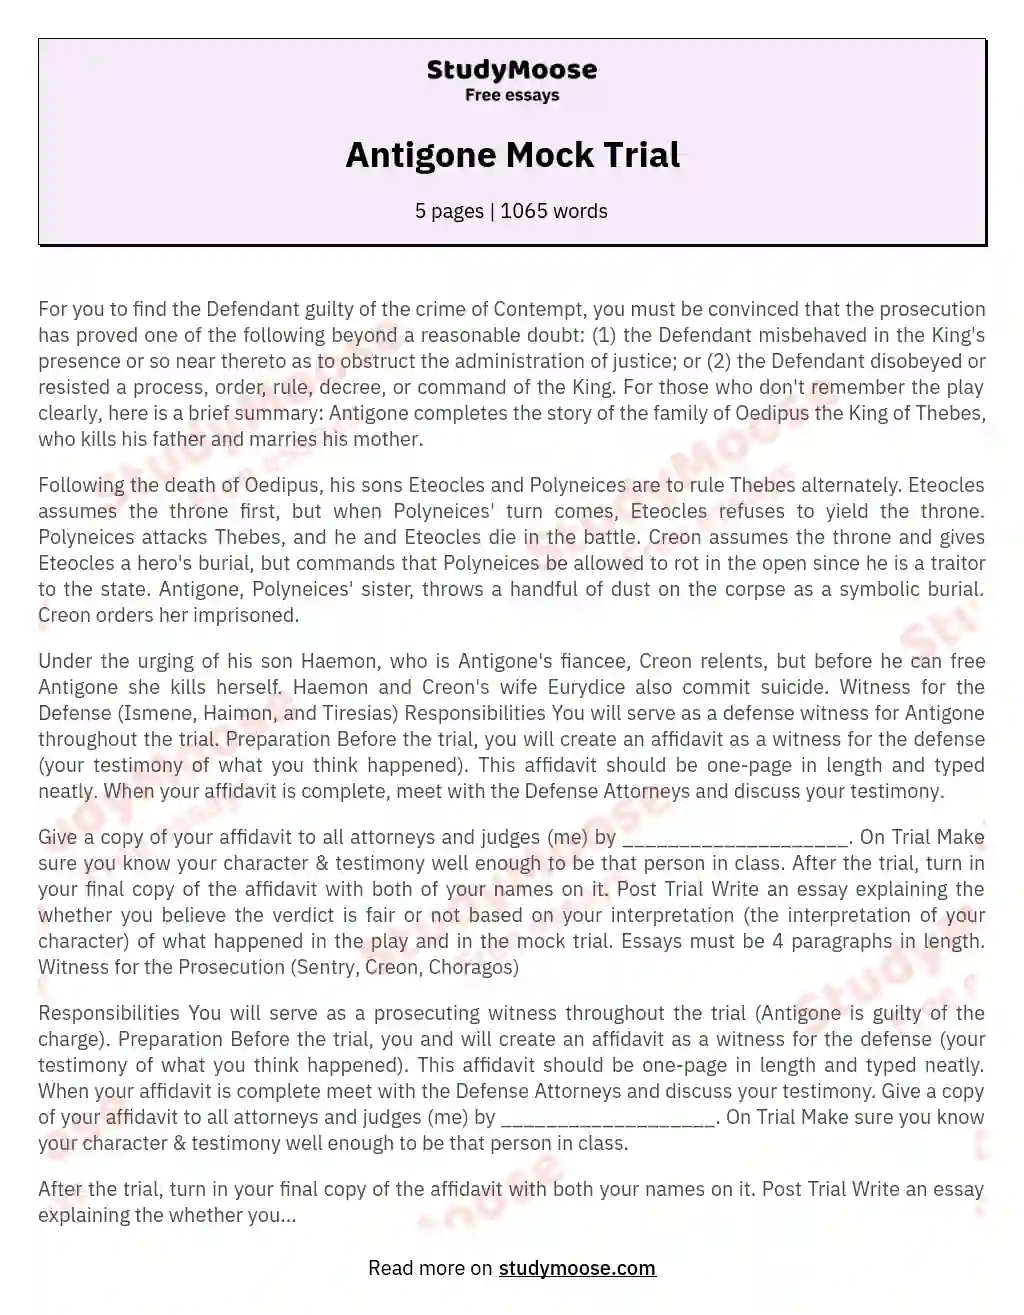 Antigone Mock Trial essay